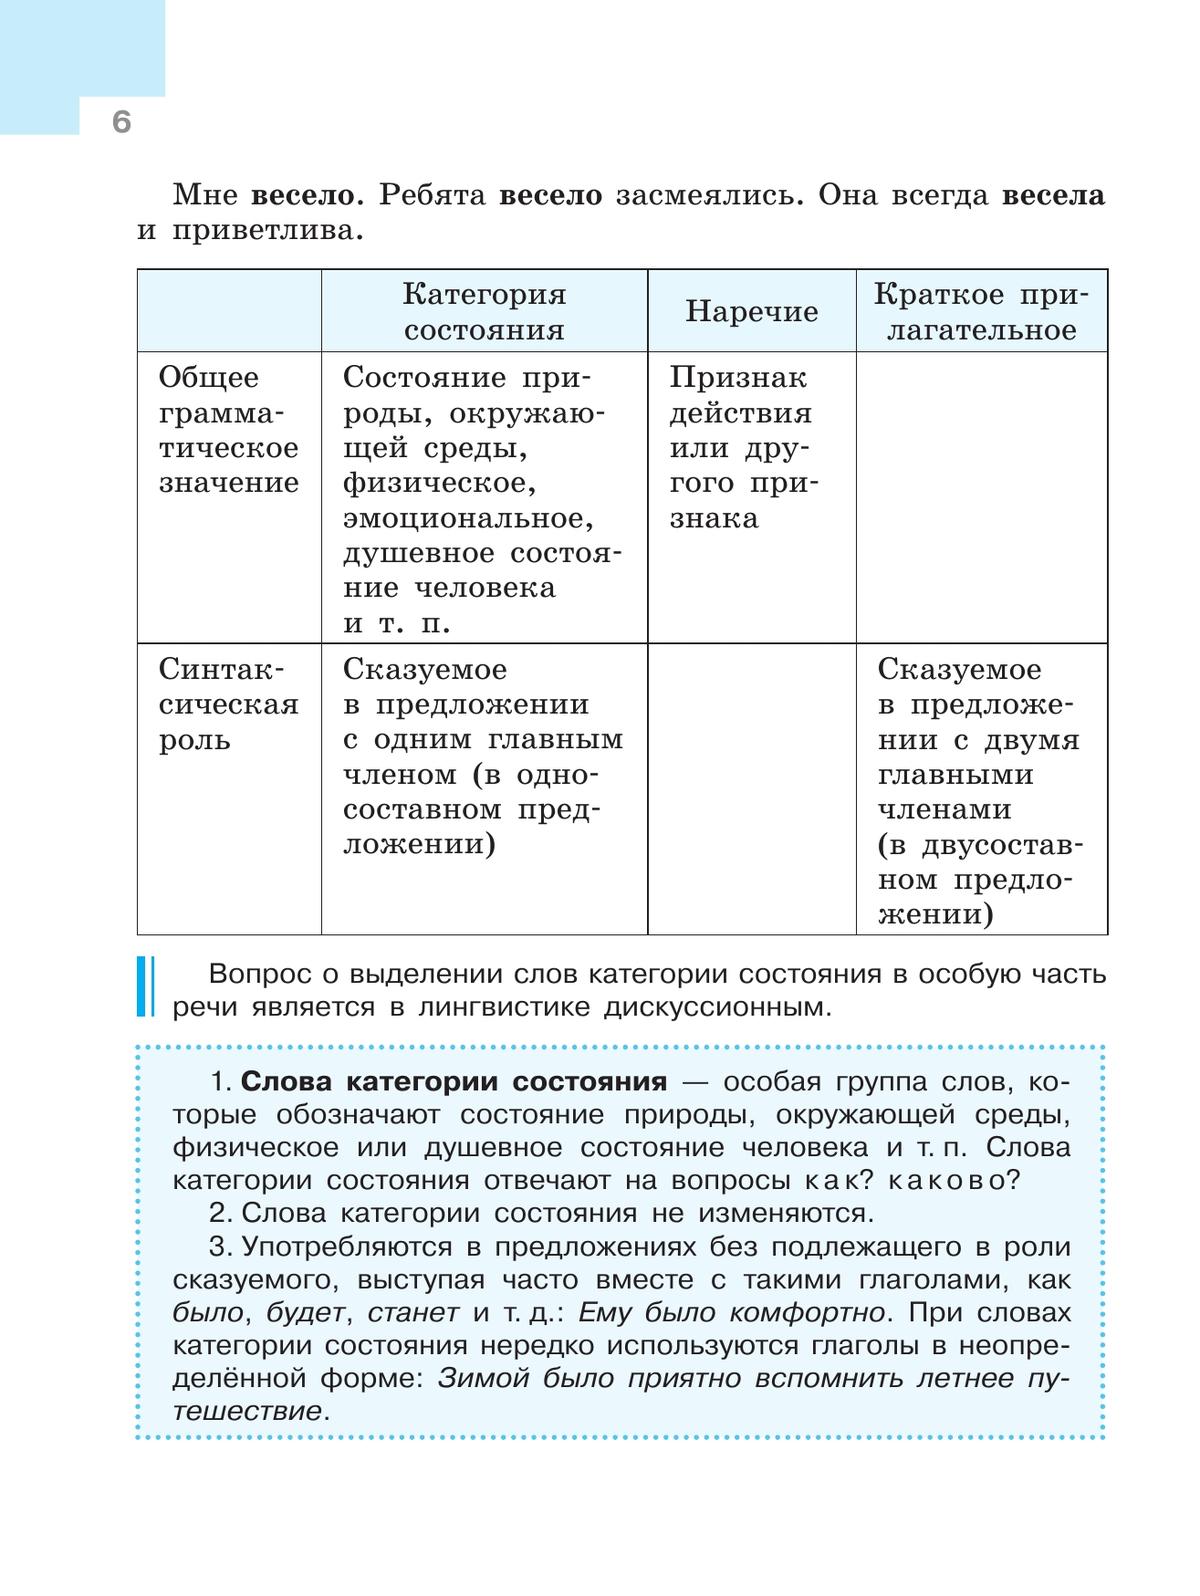 Русский язык. 7 класс. В 2 ч. Ч. 2 8